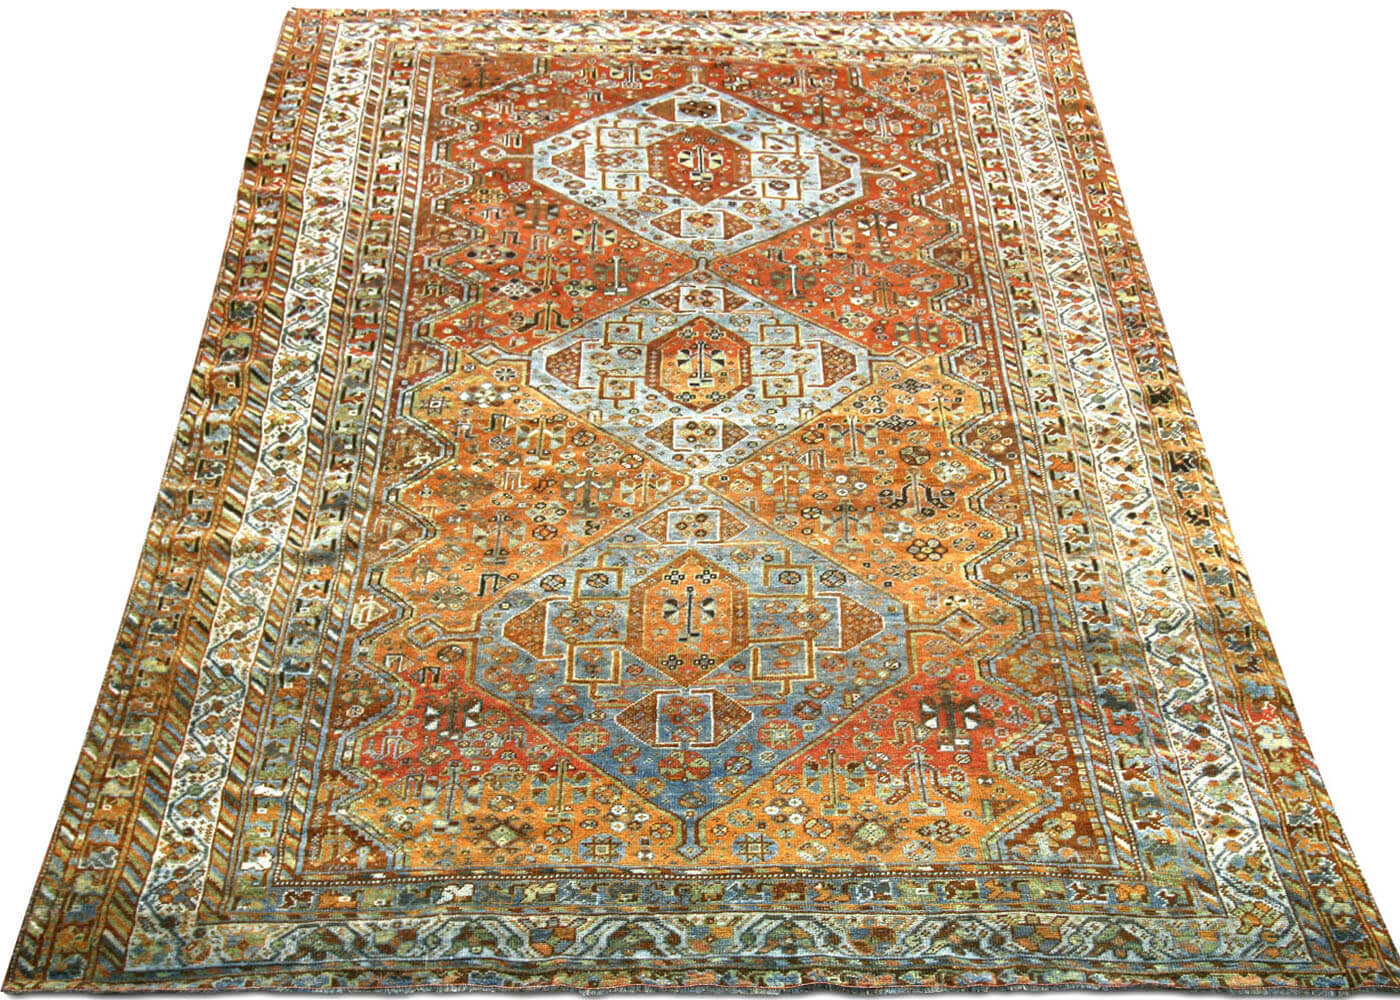 Semi Antique Persian Shiraz Rug - 6'6" x 9'9"